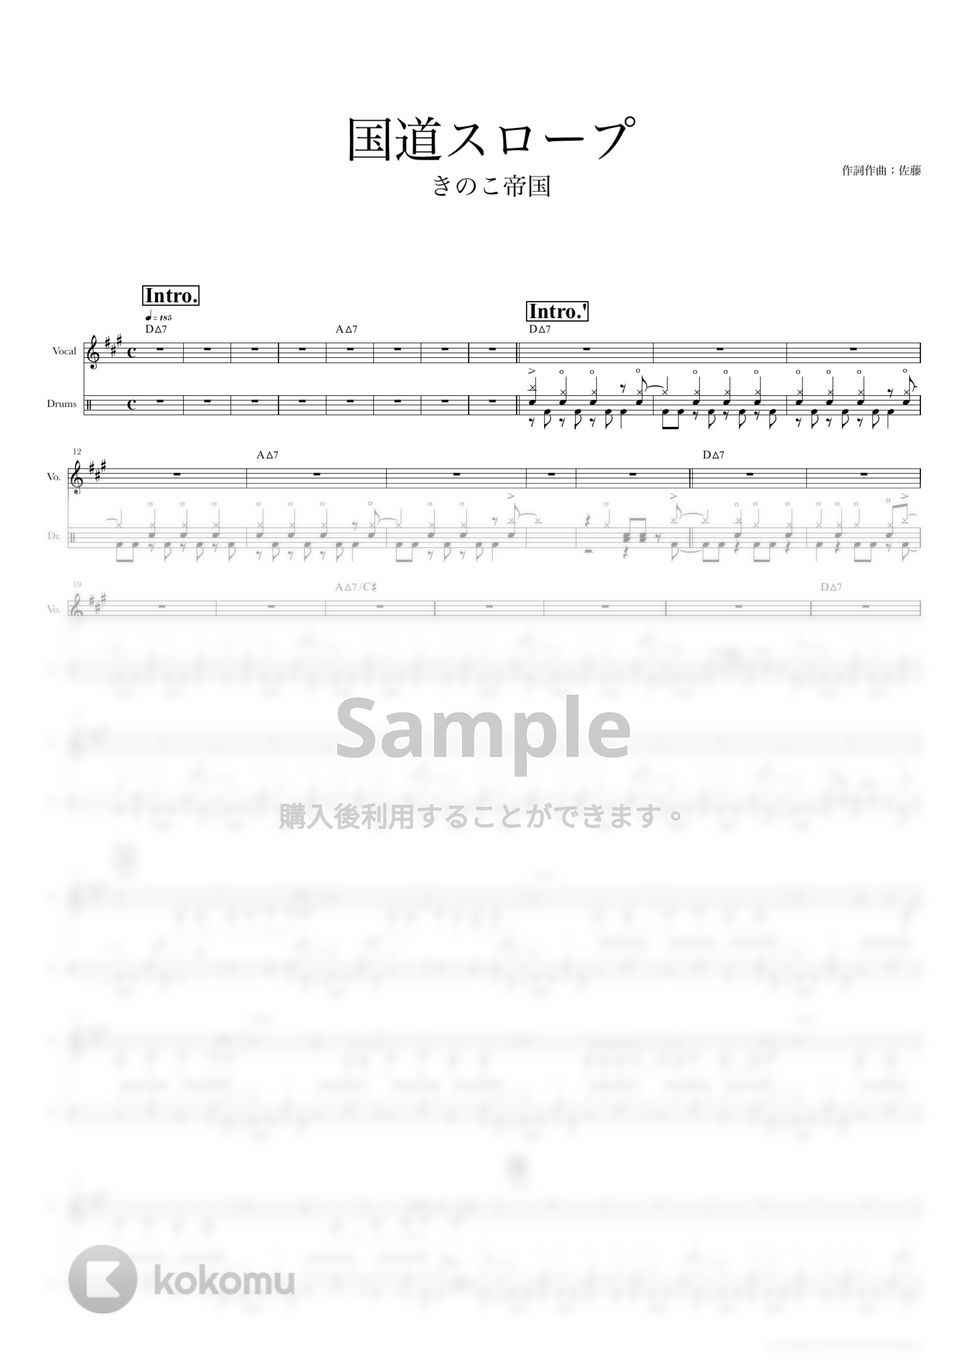 きのこ帝国 - 国道スロープ (ドラムスコア・歌詞・コード付き) by TRIAD GUITAR SCHOOL